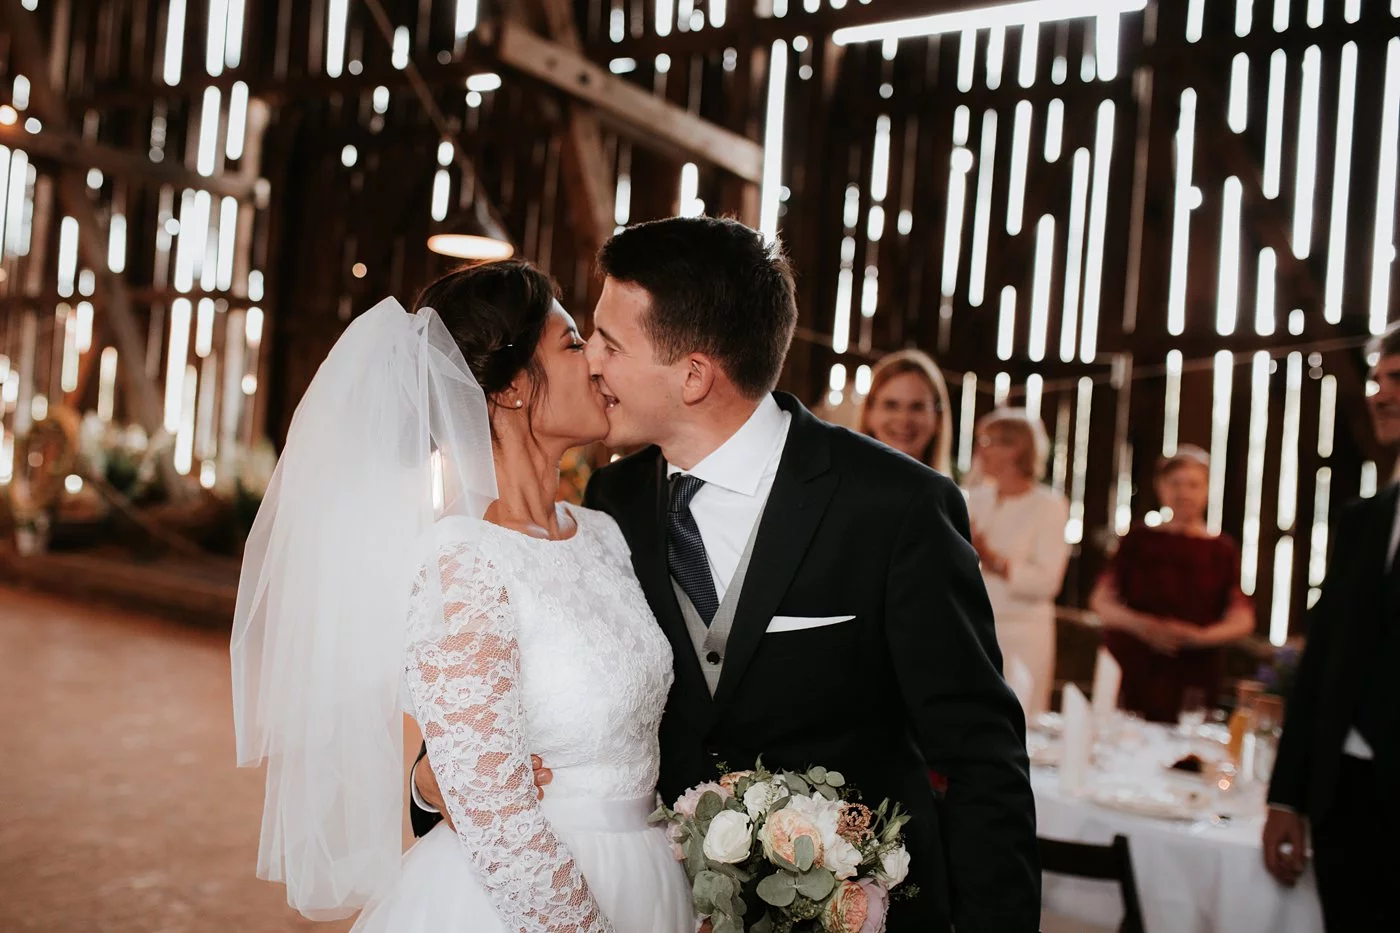 Dominika & Aleksander - Rustykalne wesele w stodole - Baborówko 101